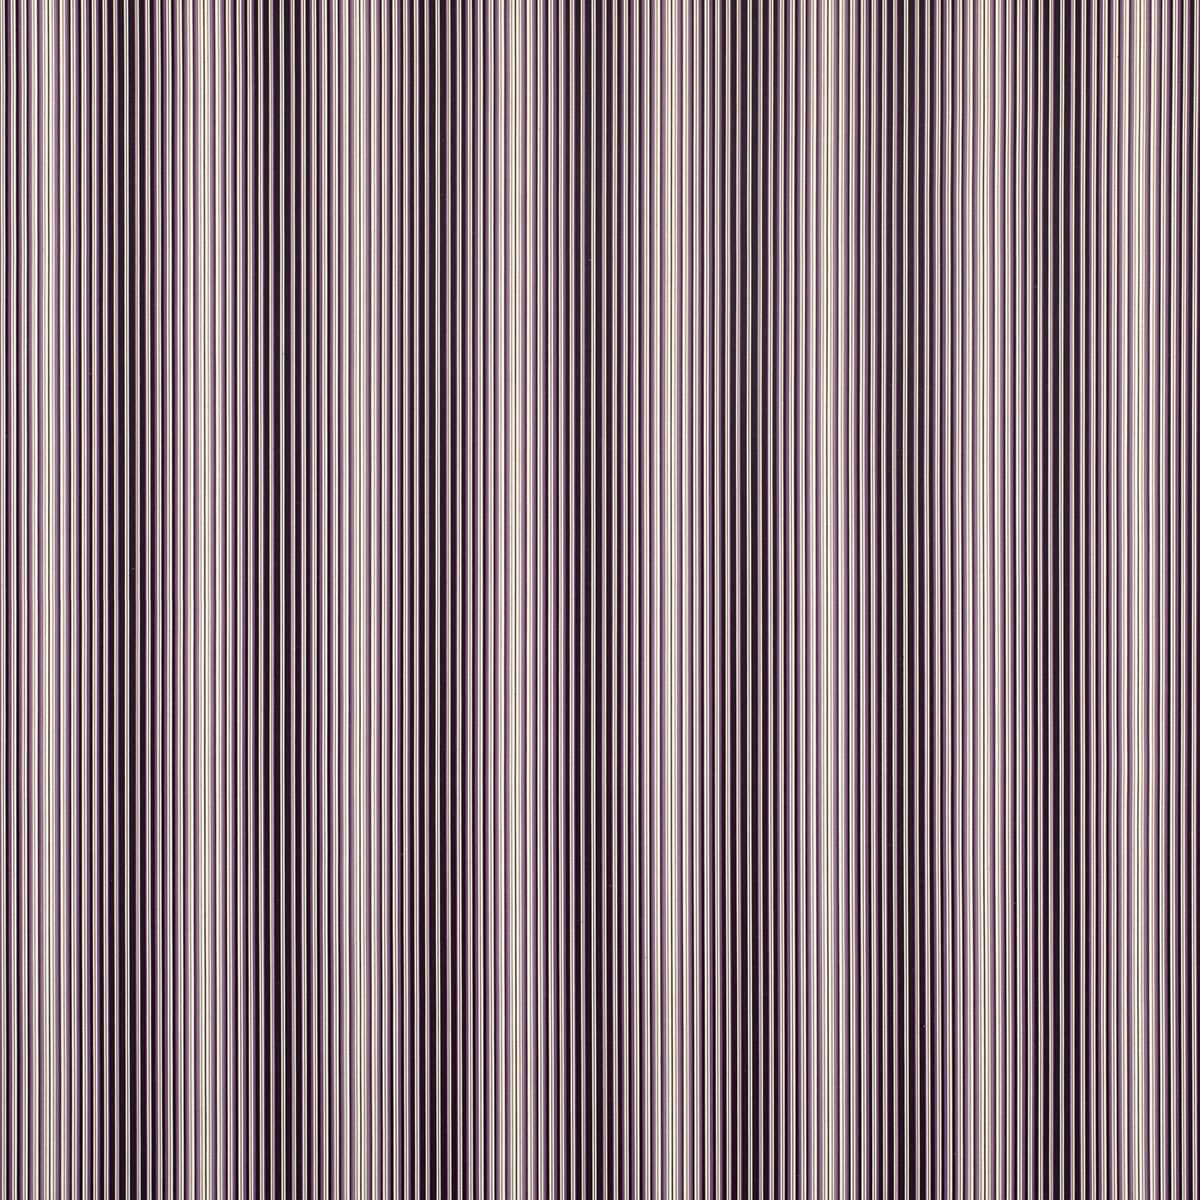 小倉織 小倉 縞縞 112 藤紫